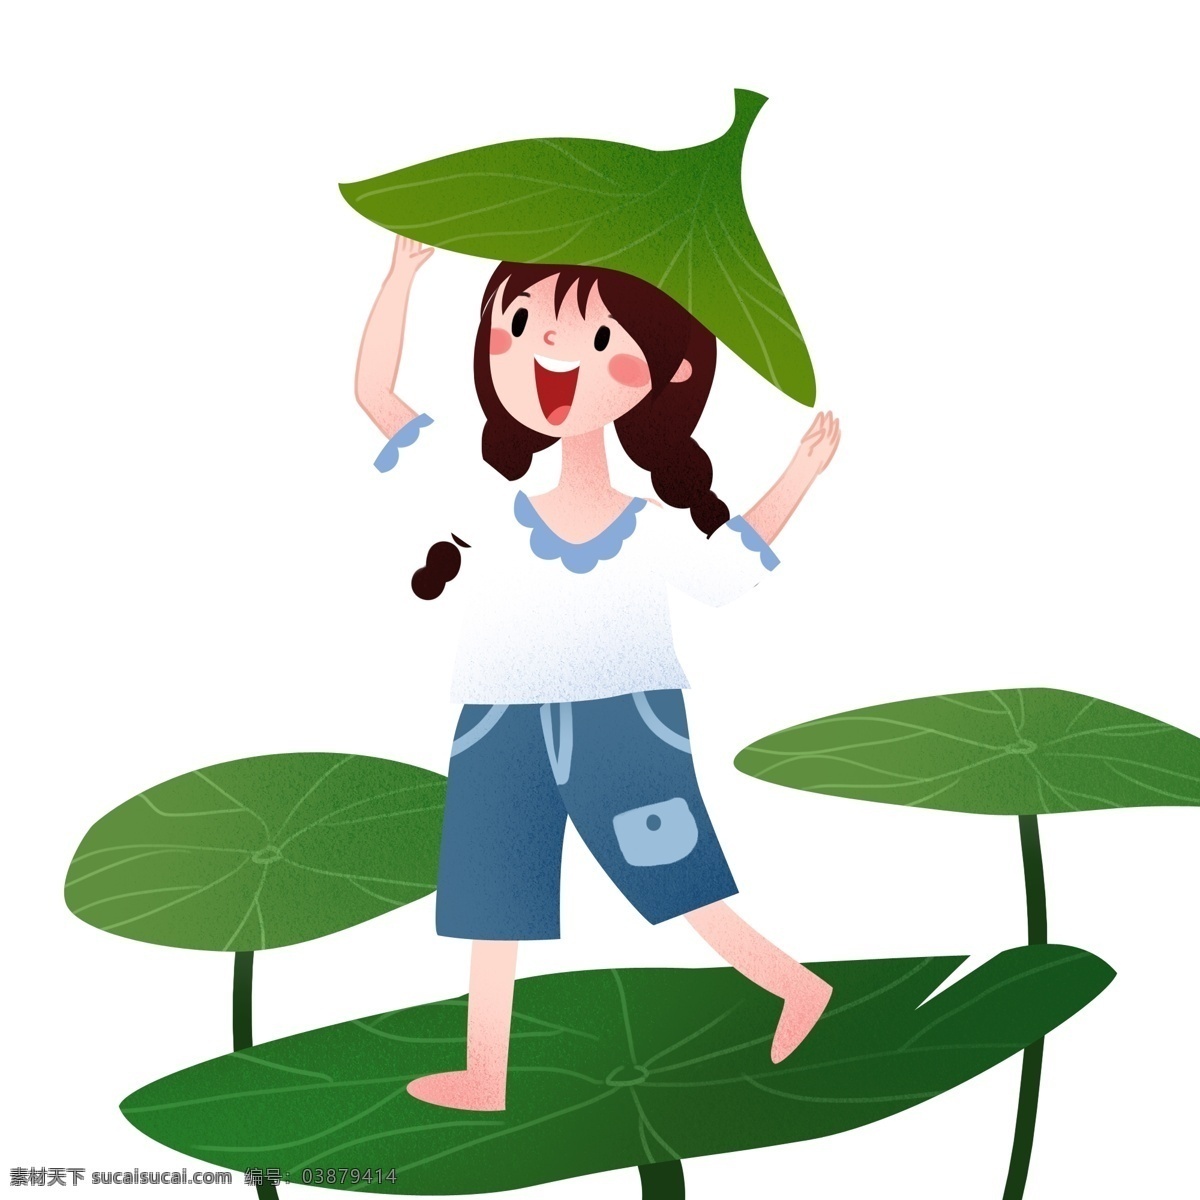 叶子 挡 雨 女孩 立夏人物插画 叶子挡雨 漂亮的小女孩 绿色的荷叶 植物装饰 卡通的人物